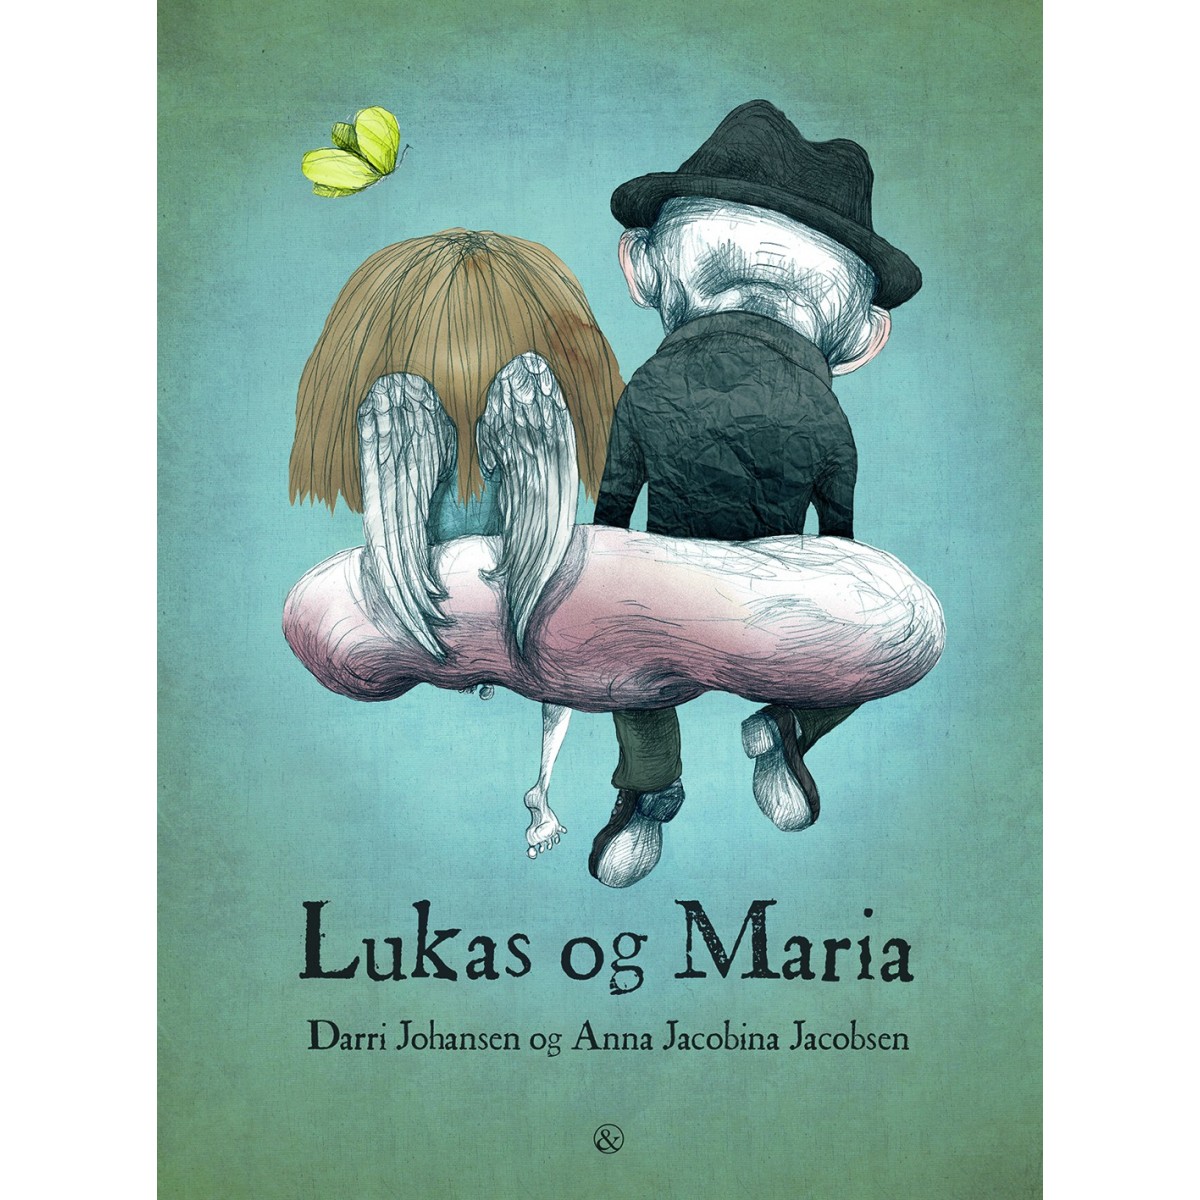 Darri Johansen og Anna Jacobina Jacobsen: Lukas og Maria